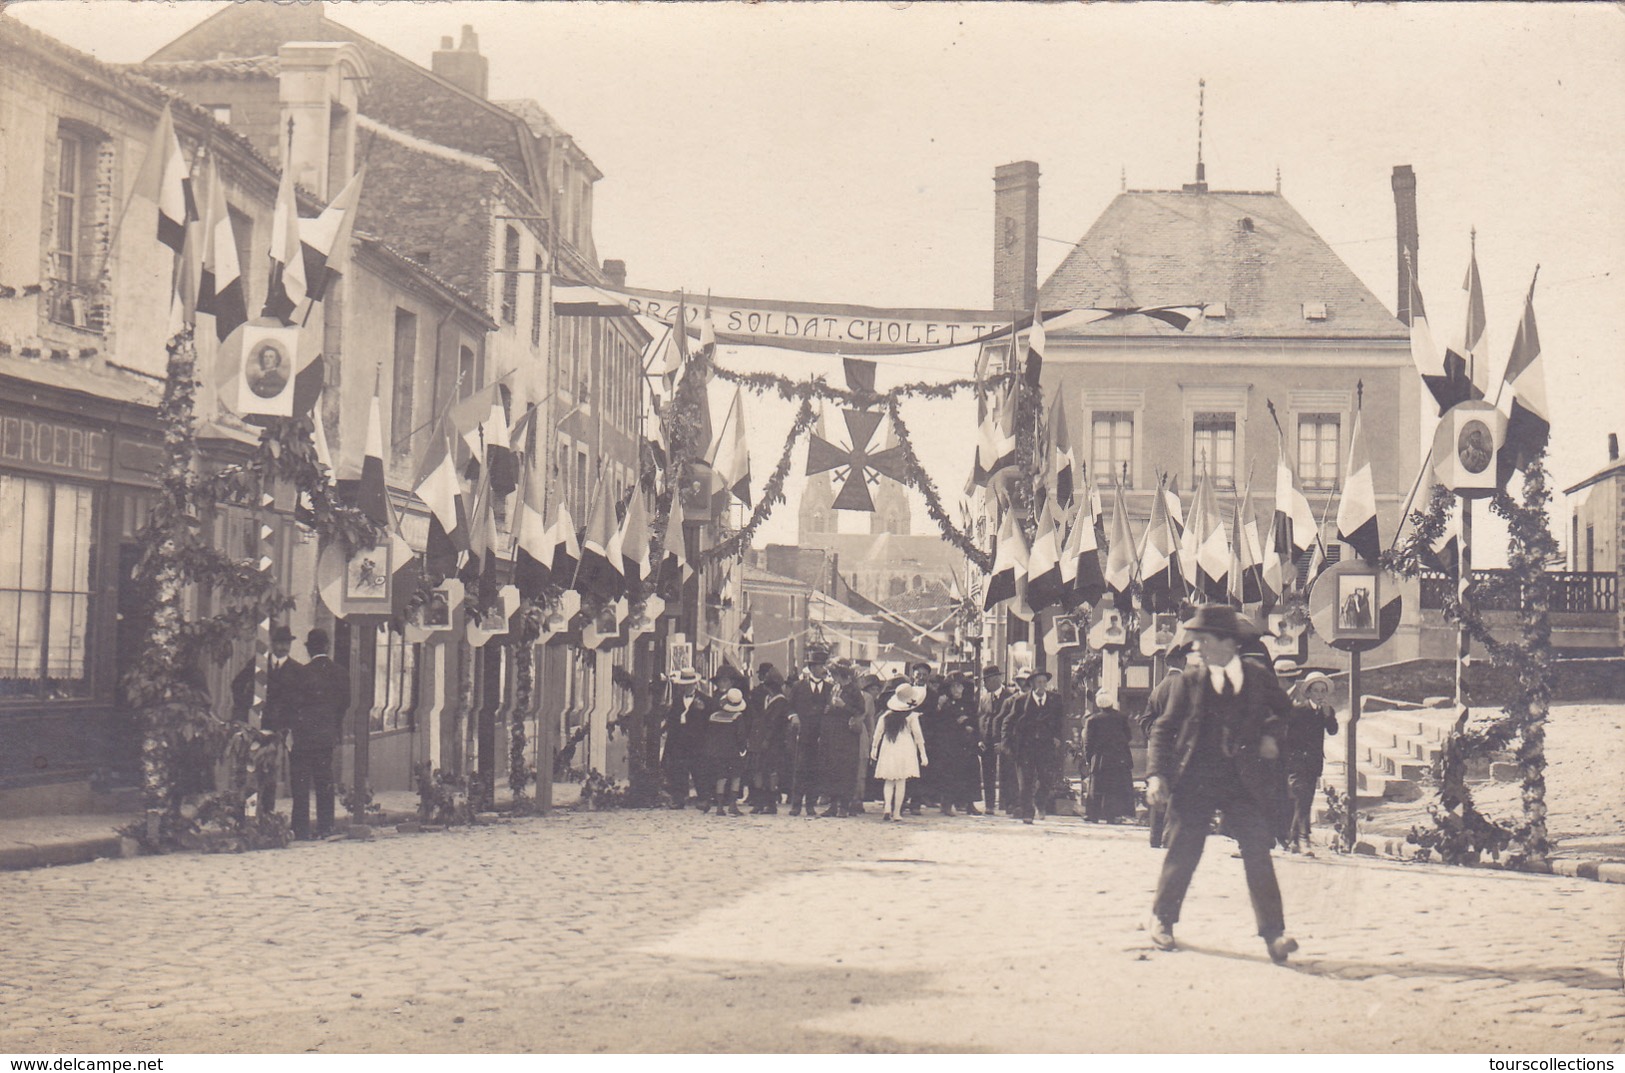 CARTE PHOTO 49 - CHOLET - Honneur Aux Soldats Choletais - WW1 Guerre 1914 1918 - Cérémonie Fête - Cholet